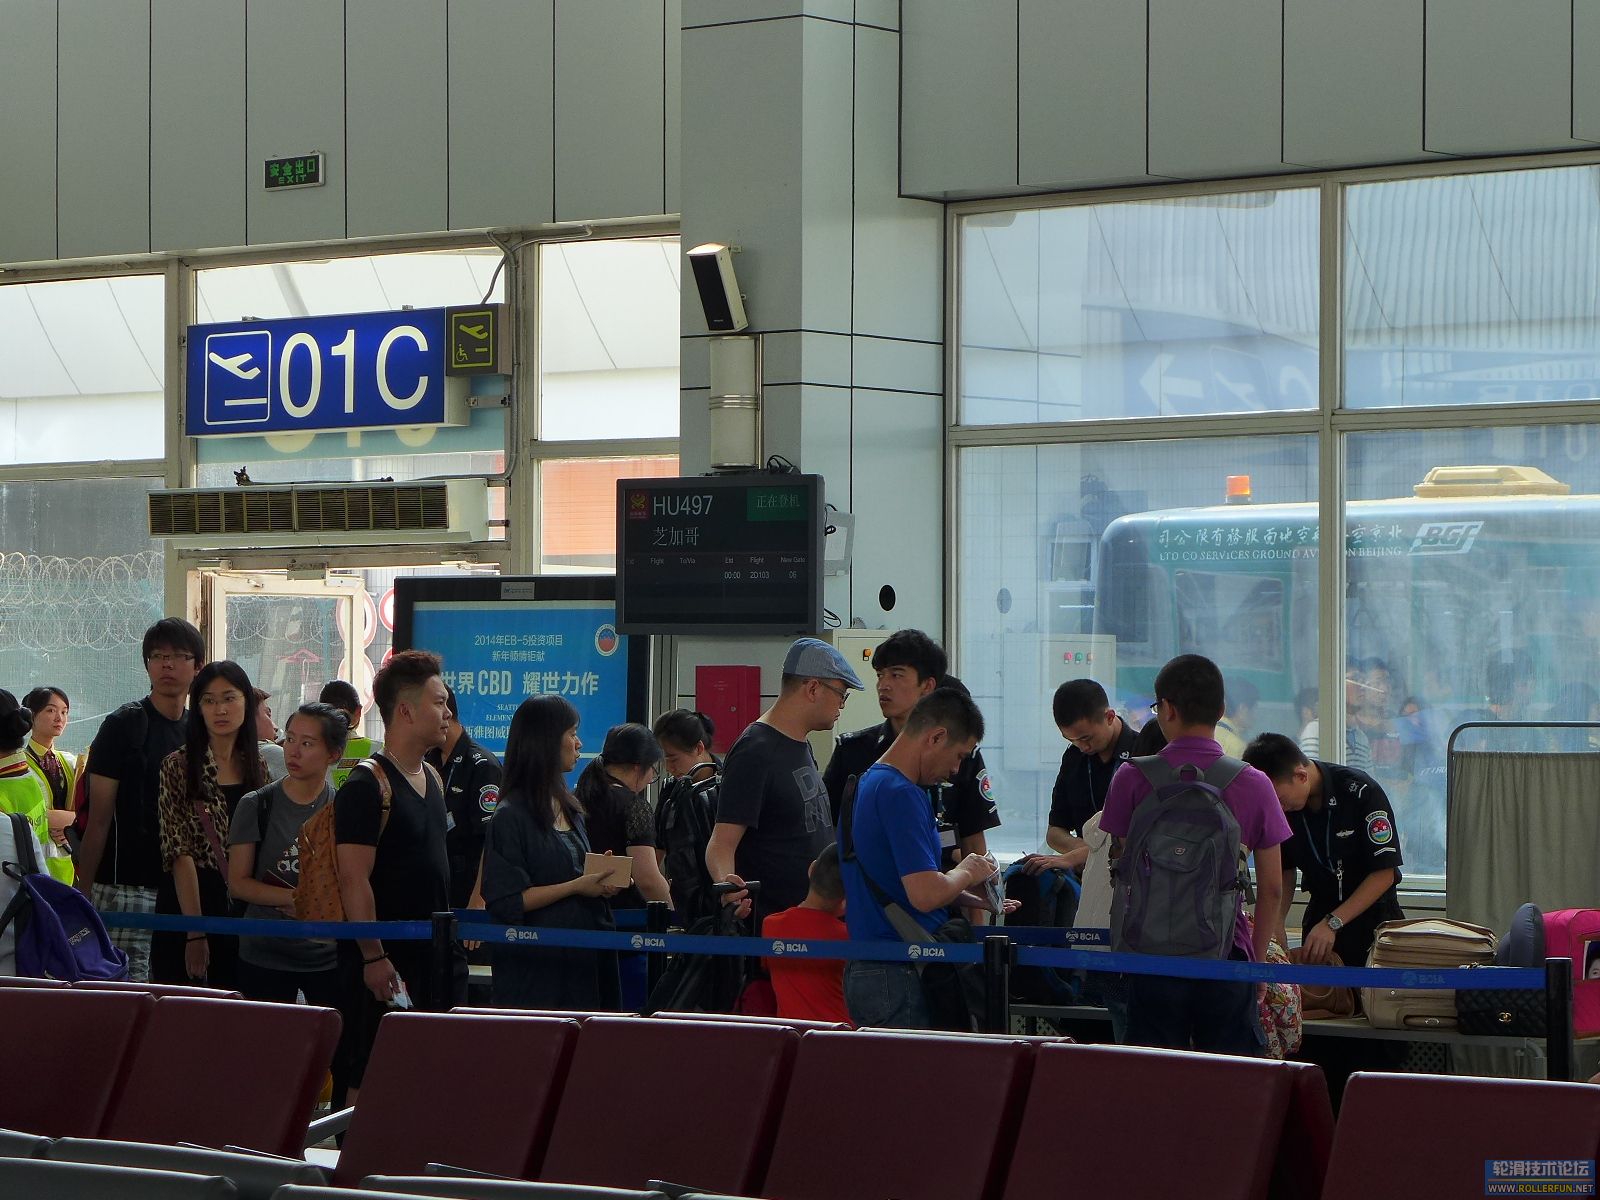 911之际，北京首都机场飞往美国的航班增加了一道登机前安检